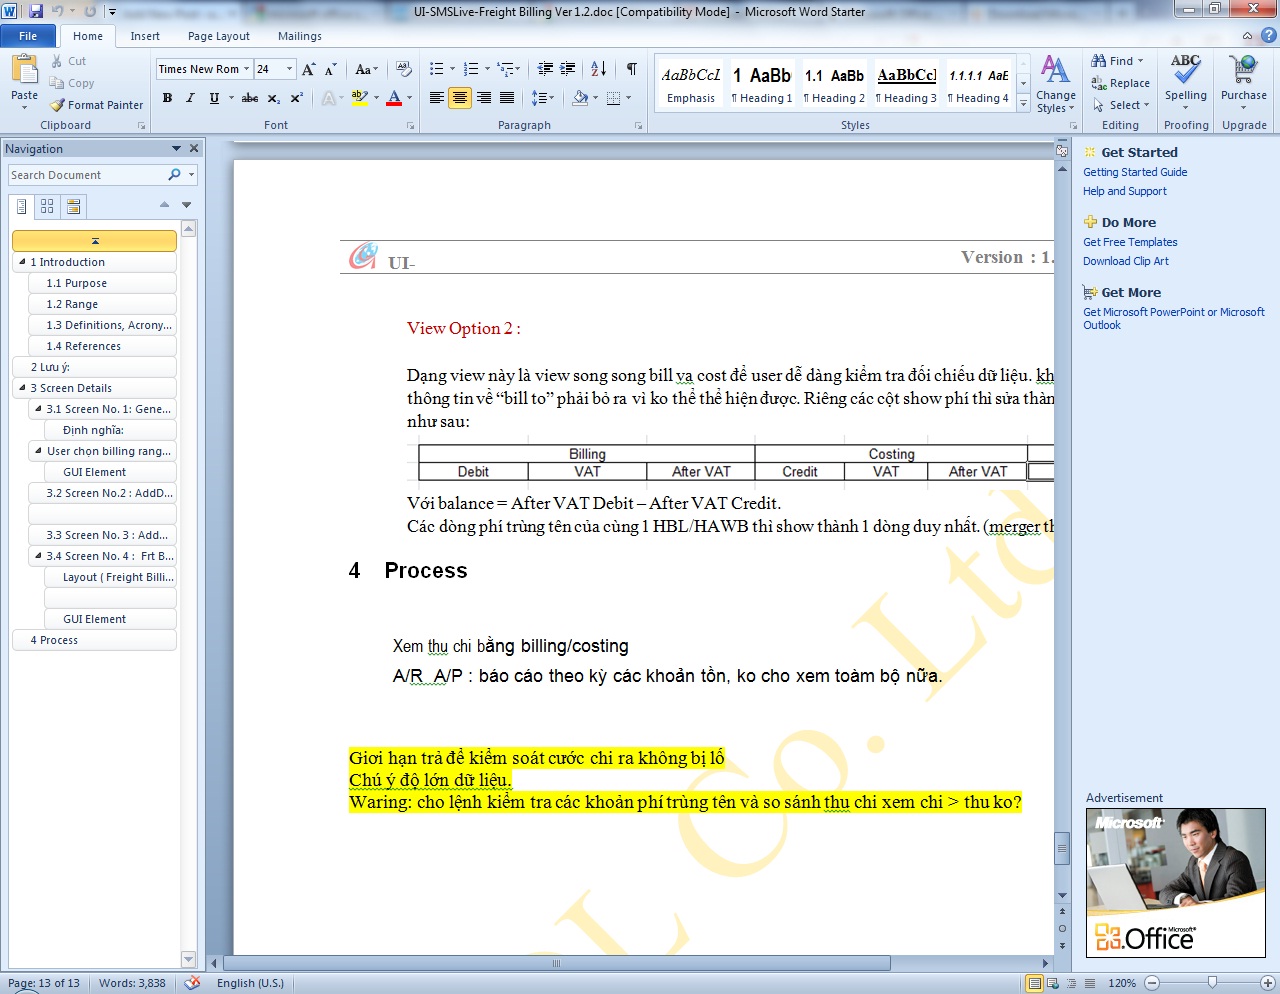 Microsoft Office Starter 2010 - Link tải bản cài đặt miễn phí từ Microsoft